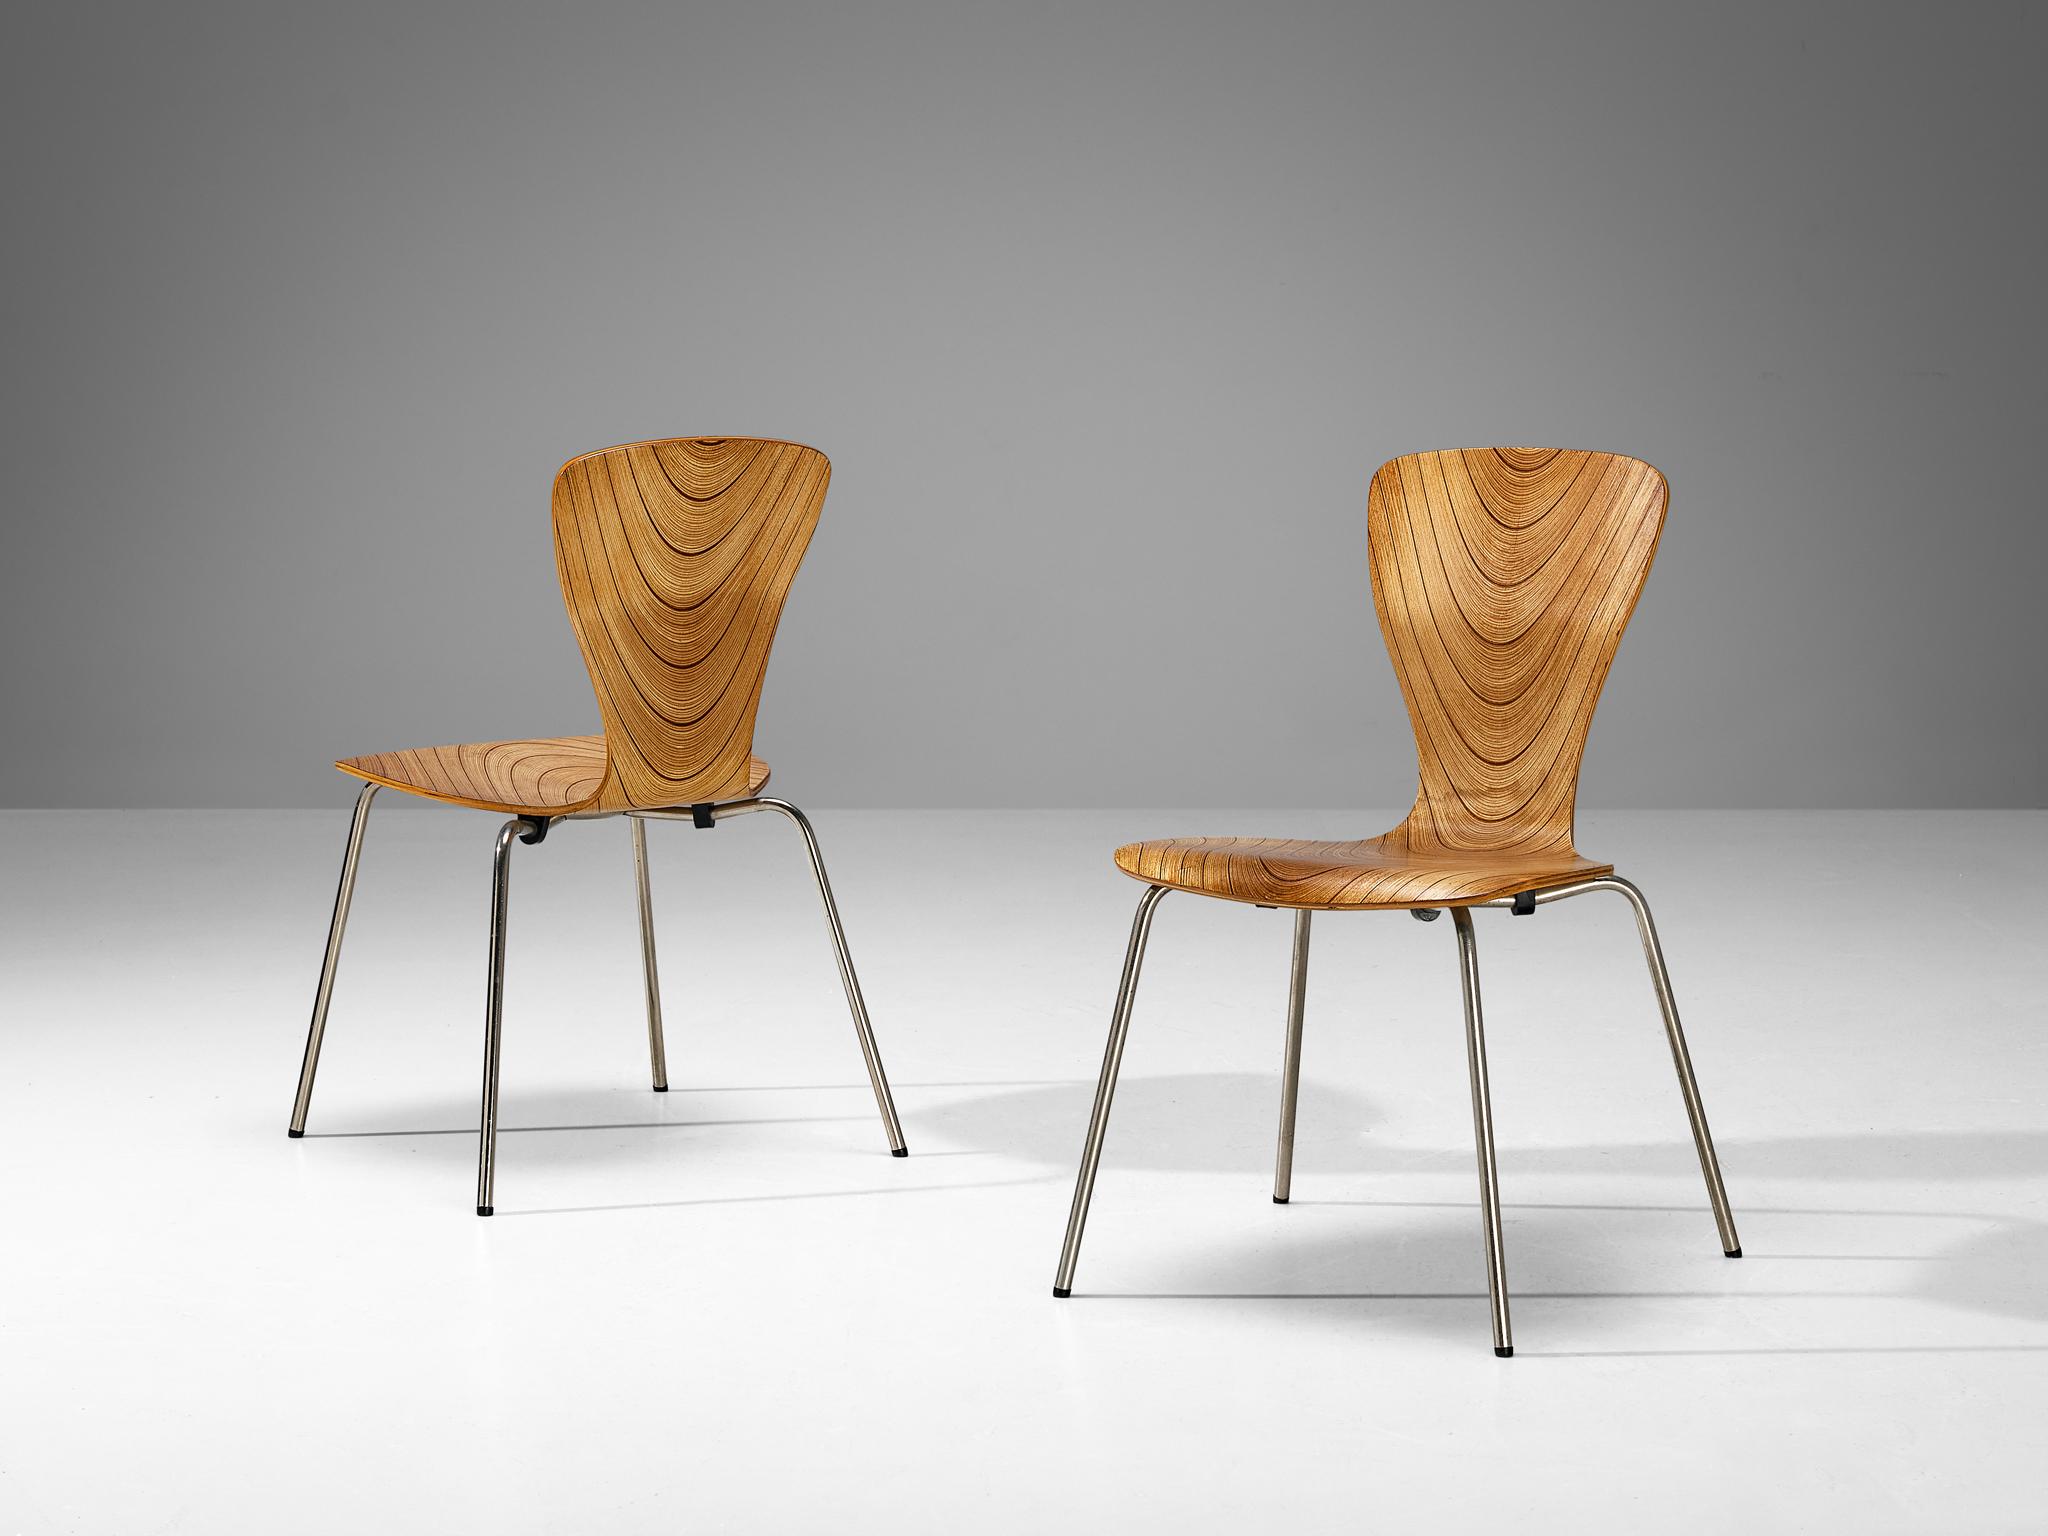 Tapio Wirkkala, paire de chaises de salle à manger, métal, contreplaqué, Finlande, années 1960

Cette paire de chaises exceptionnelle du designer finlandais Tapio Wirkkala présente un beau jeu de lignes dynamiques qui structurent l'assise et le